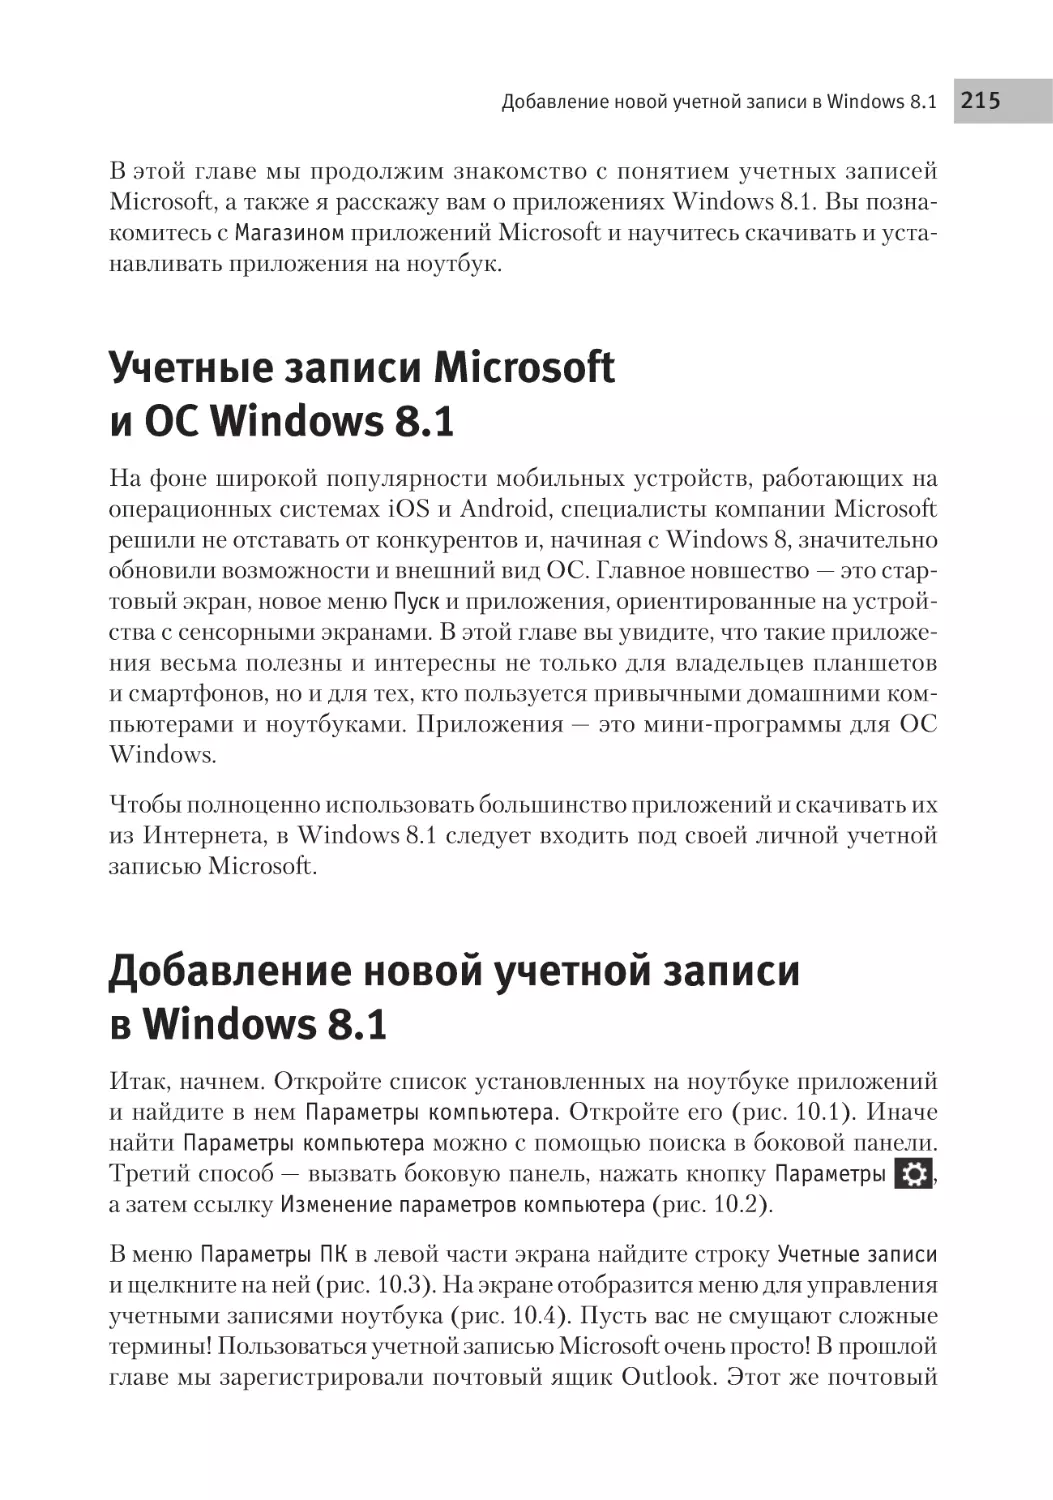 Учетные записи Microsoft и ОС Windows 8.1
Добавление новой учетной записи в Windows 8.1